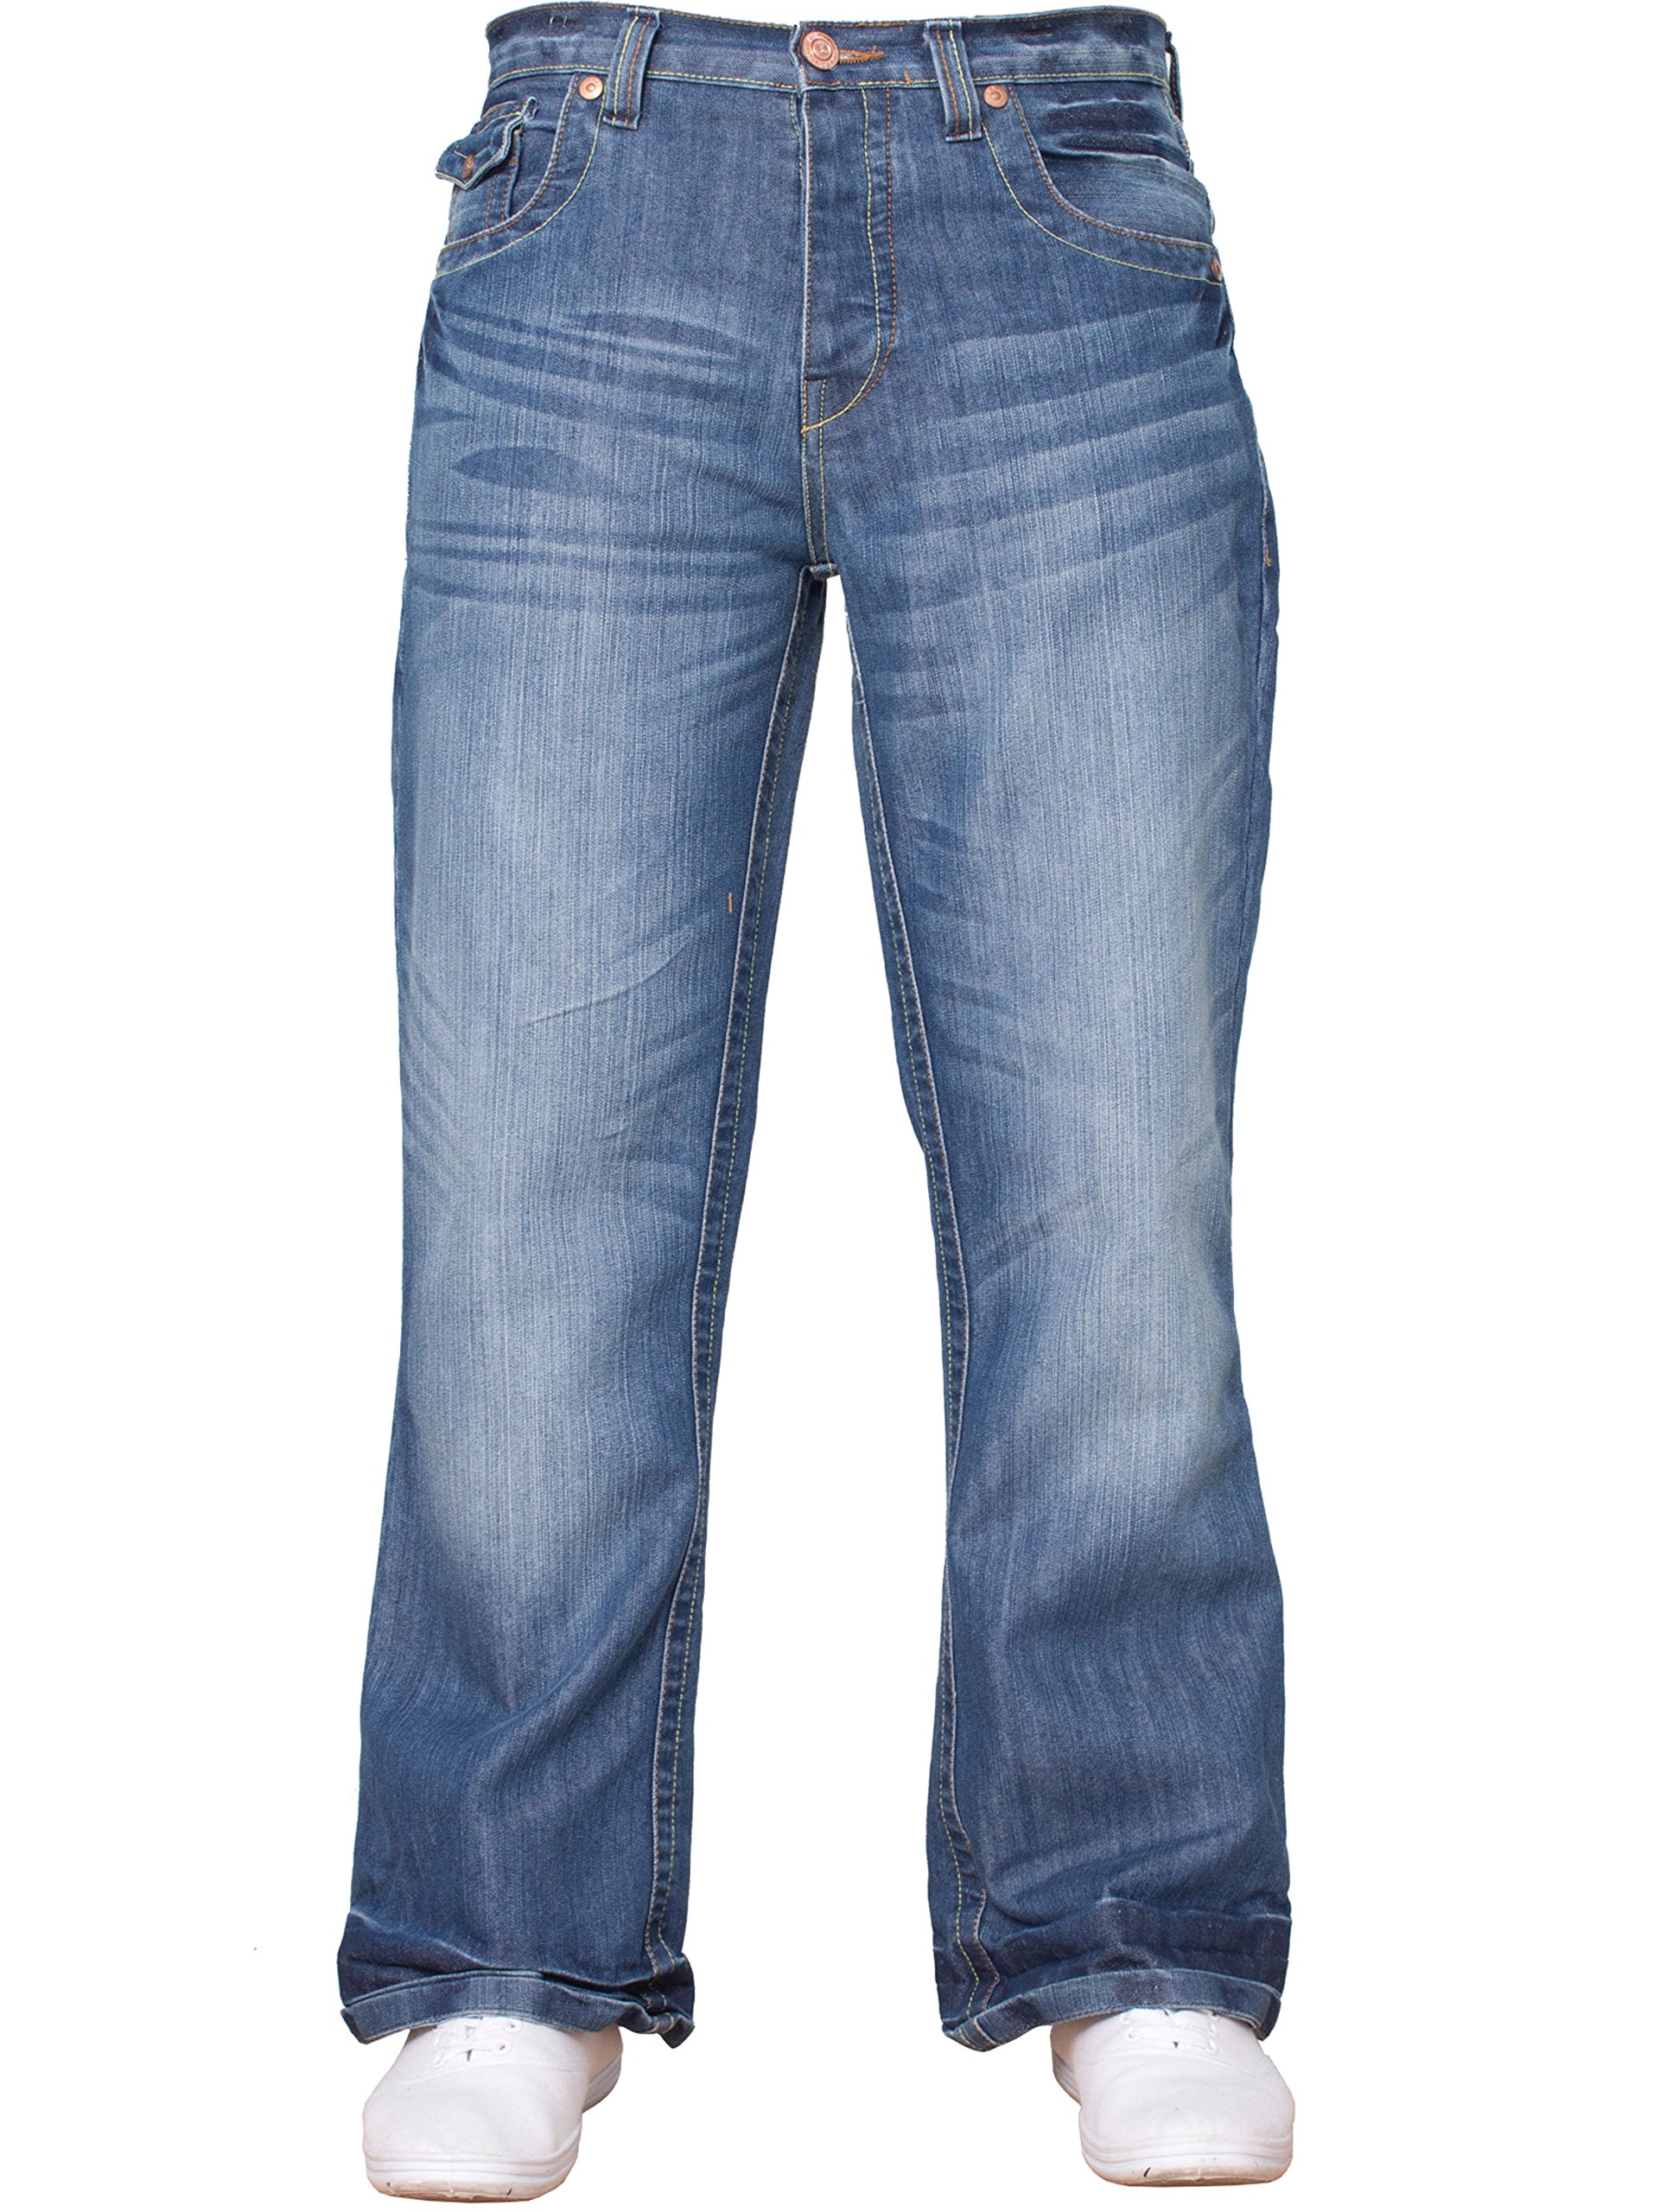 APT Herren einfach blau Bootcut weites Bein ausgestellt Works Freizeit Jeans Große Größen in 3 Farben erhältlich - Helle Waschung, 40W x 32L